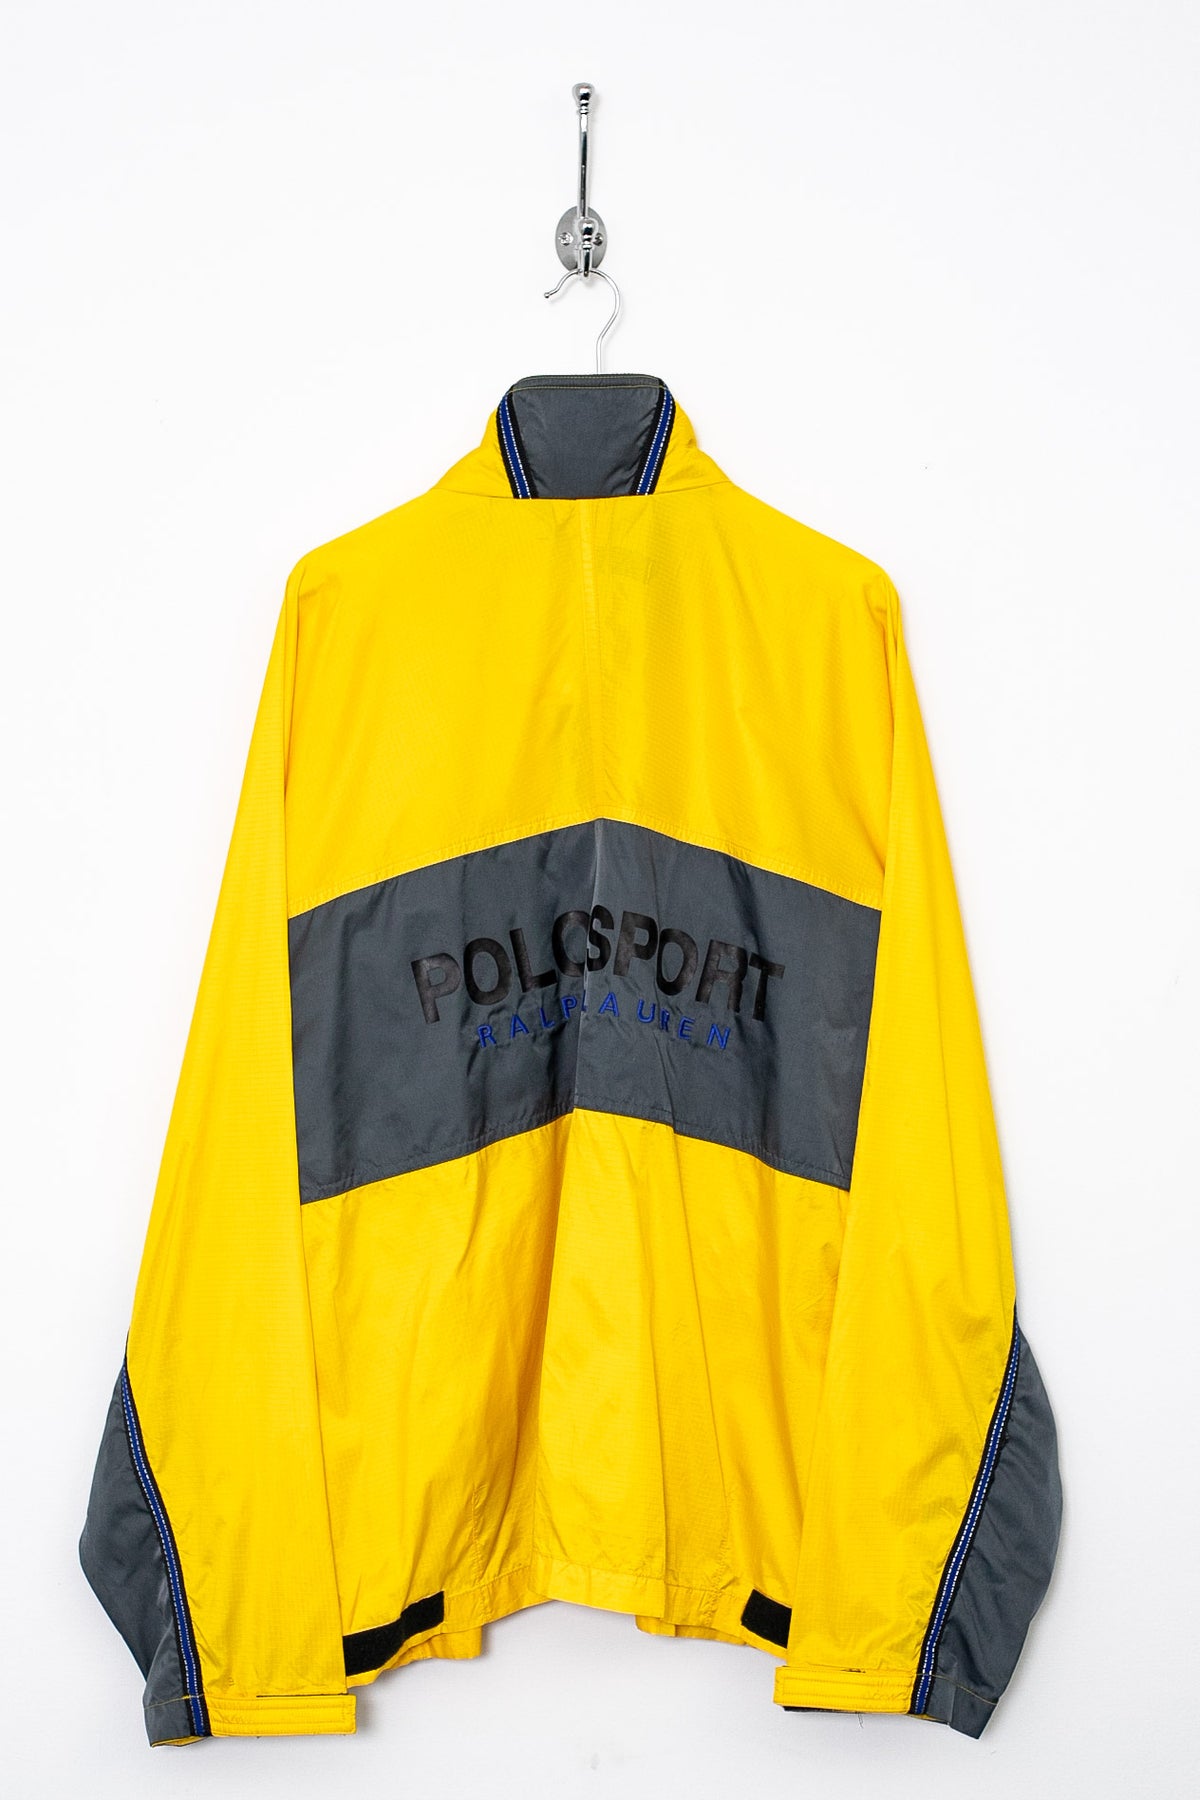 00s Ralph Lauren Polo Sport Jacket (XL)